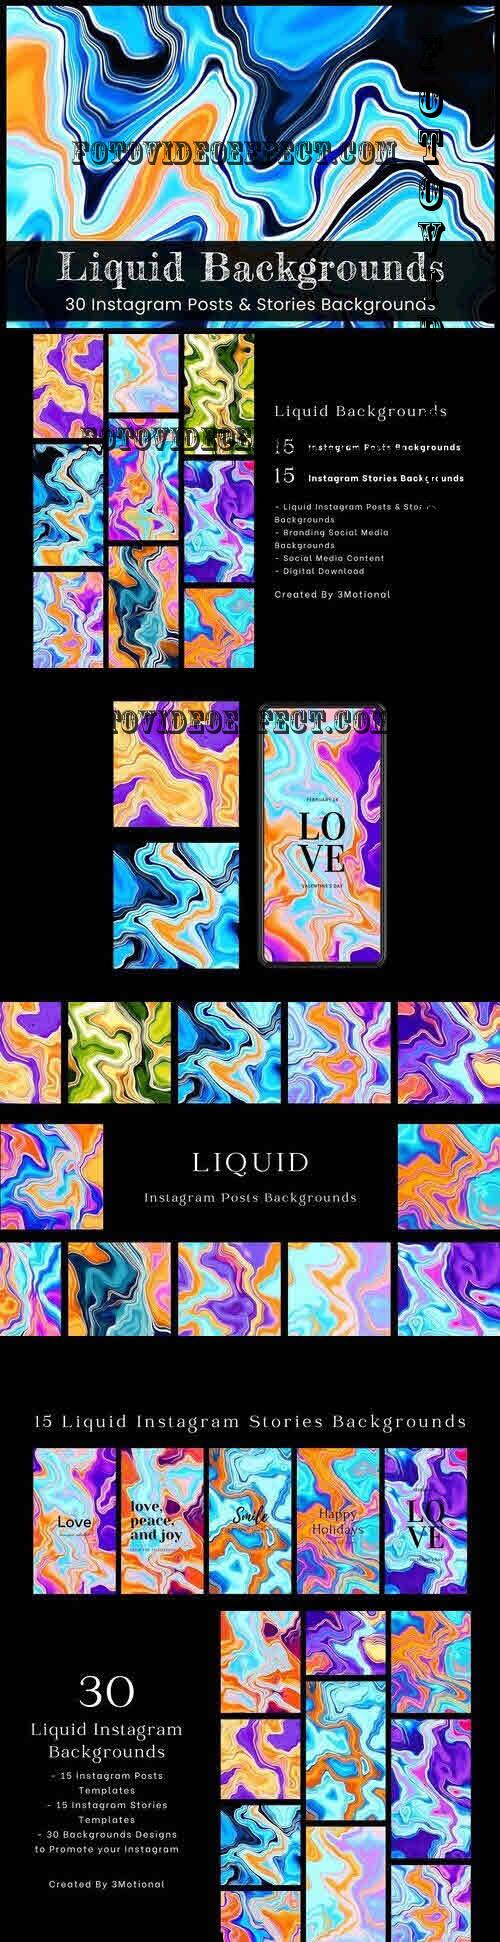 Liquid Instagram Backgrounds - 7541818